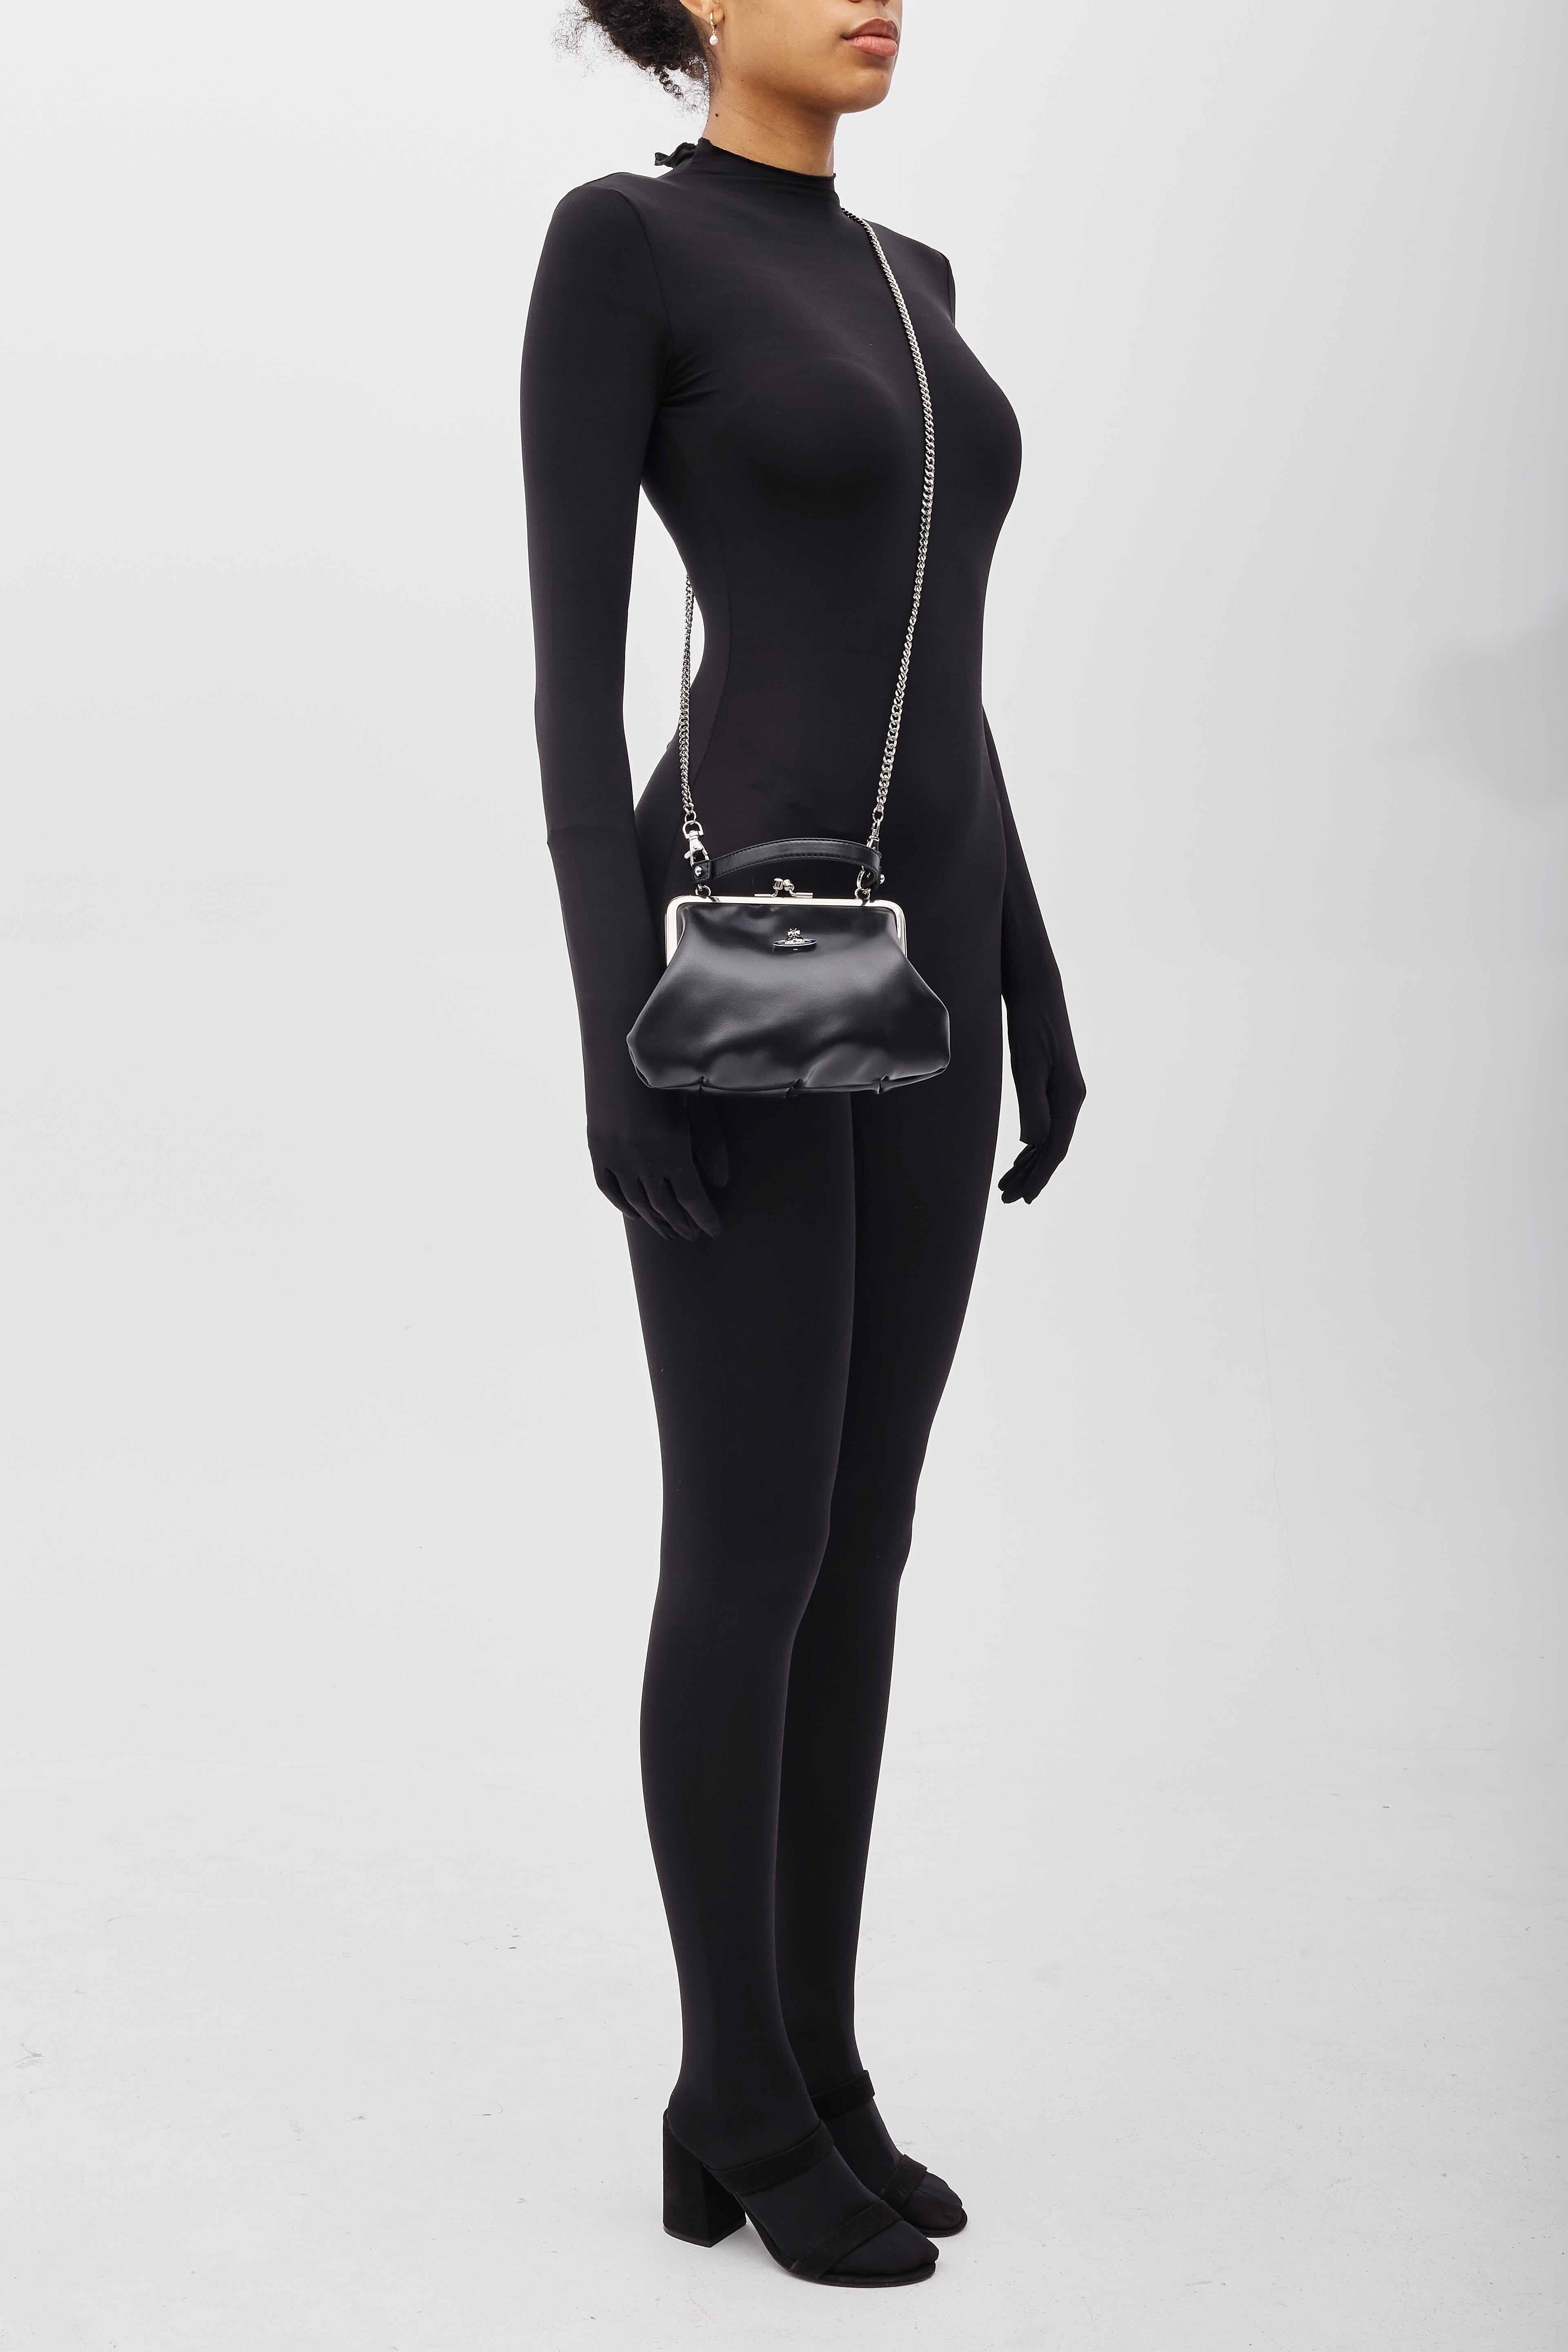 Vivienne Westwood Black Leather Granny Frame Bag For Sale 3